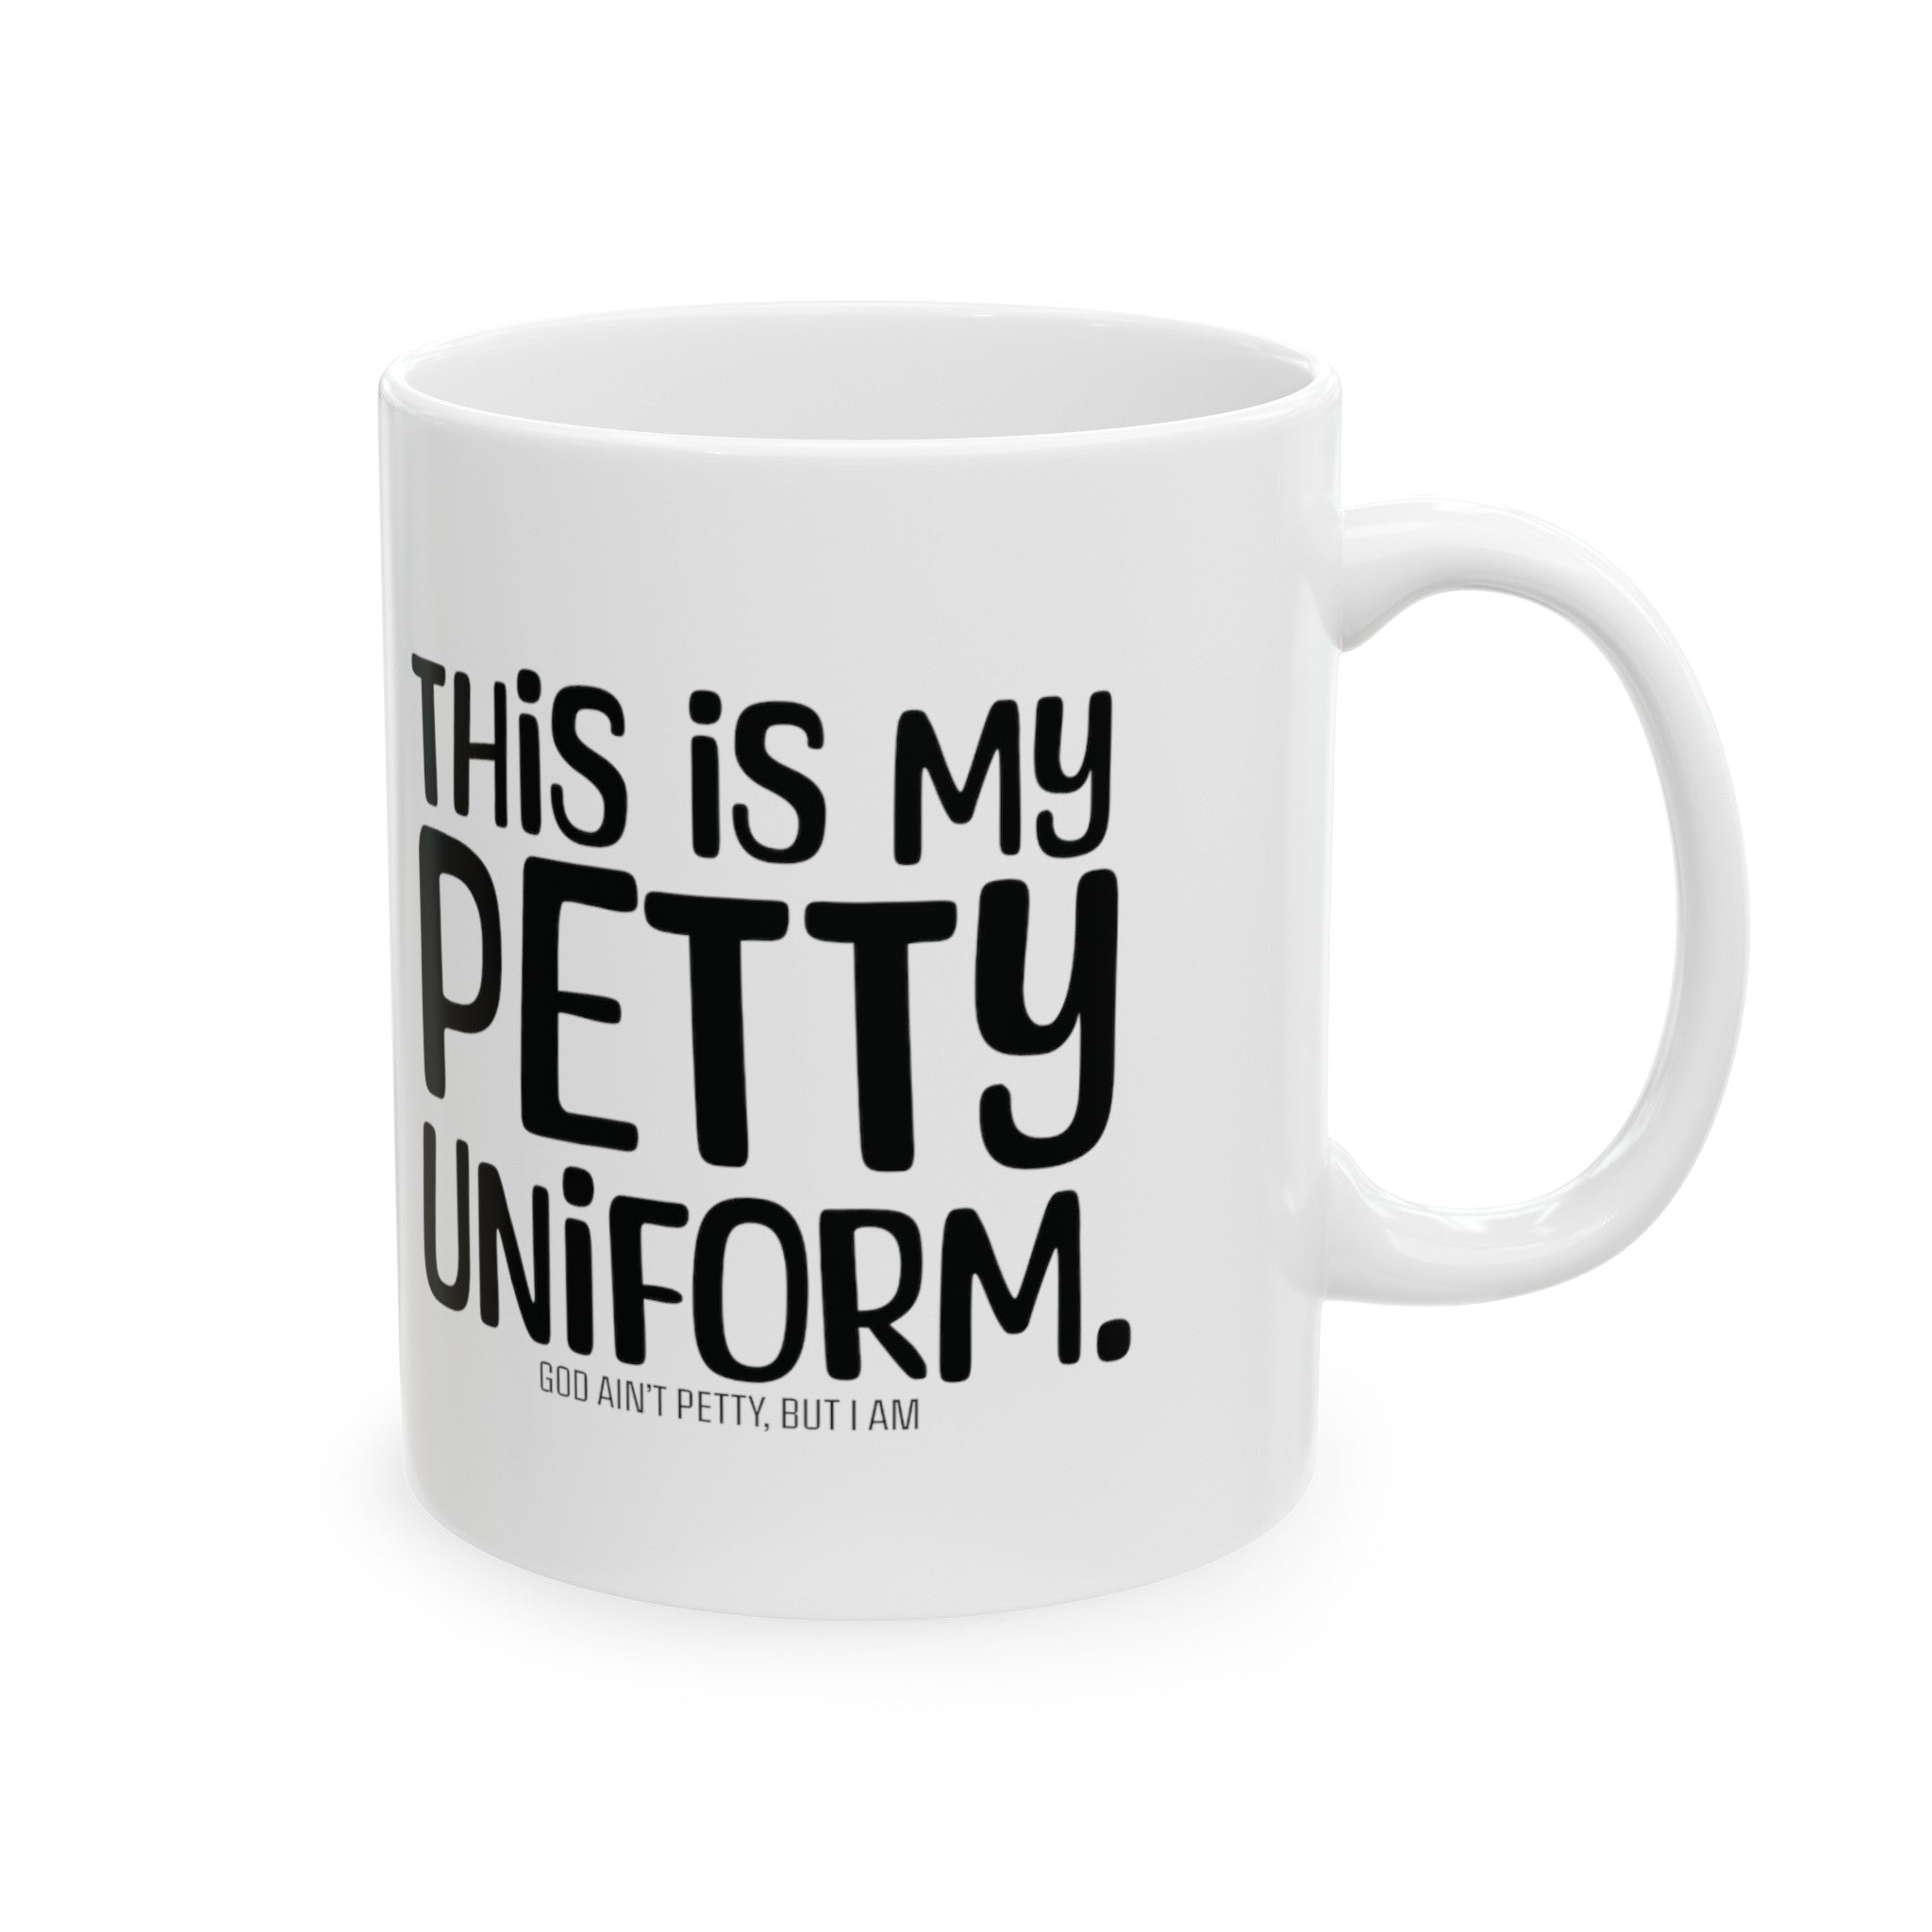 This is my Petty Uniform Mug 11oz ( White & Black)-Mug-The Original God Ain't Petty But I Am